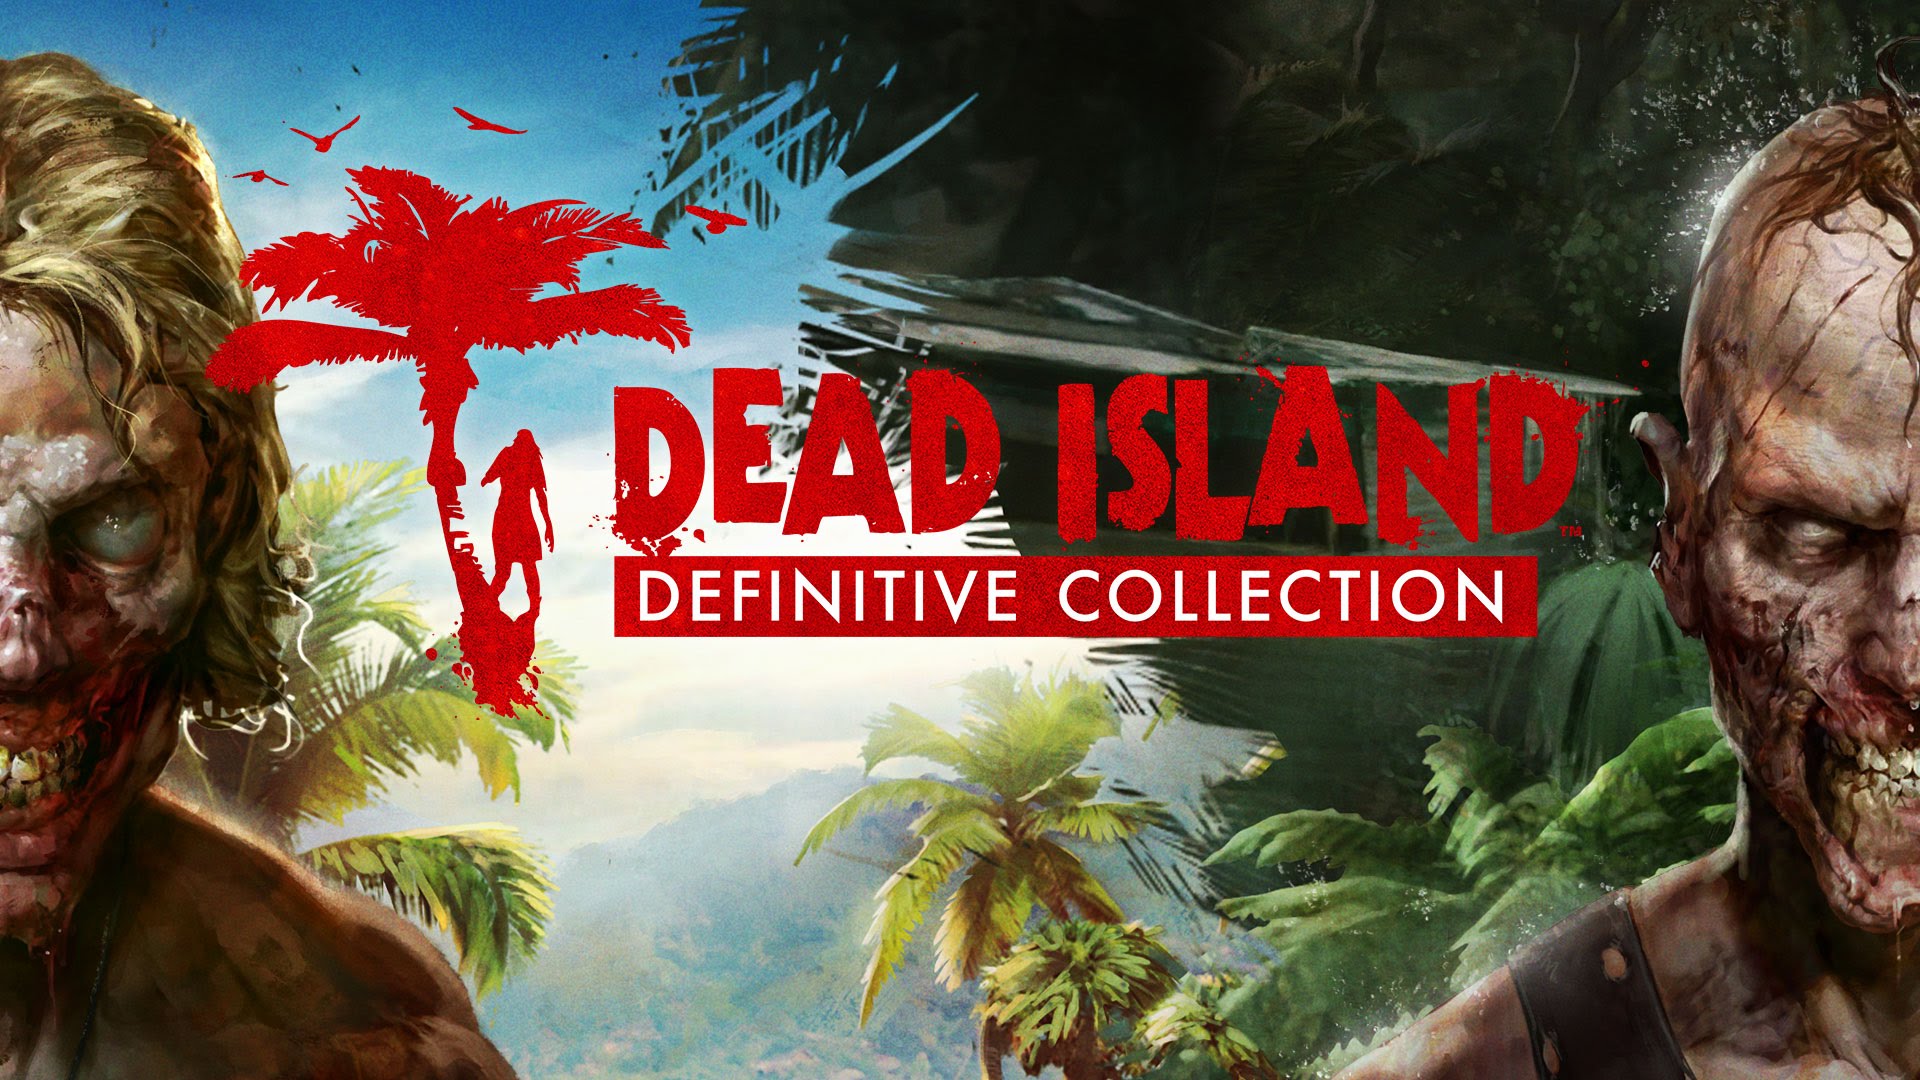 Dead Island Retro Revenge - Gameplay Trailer